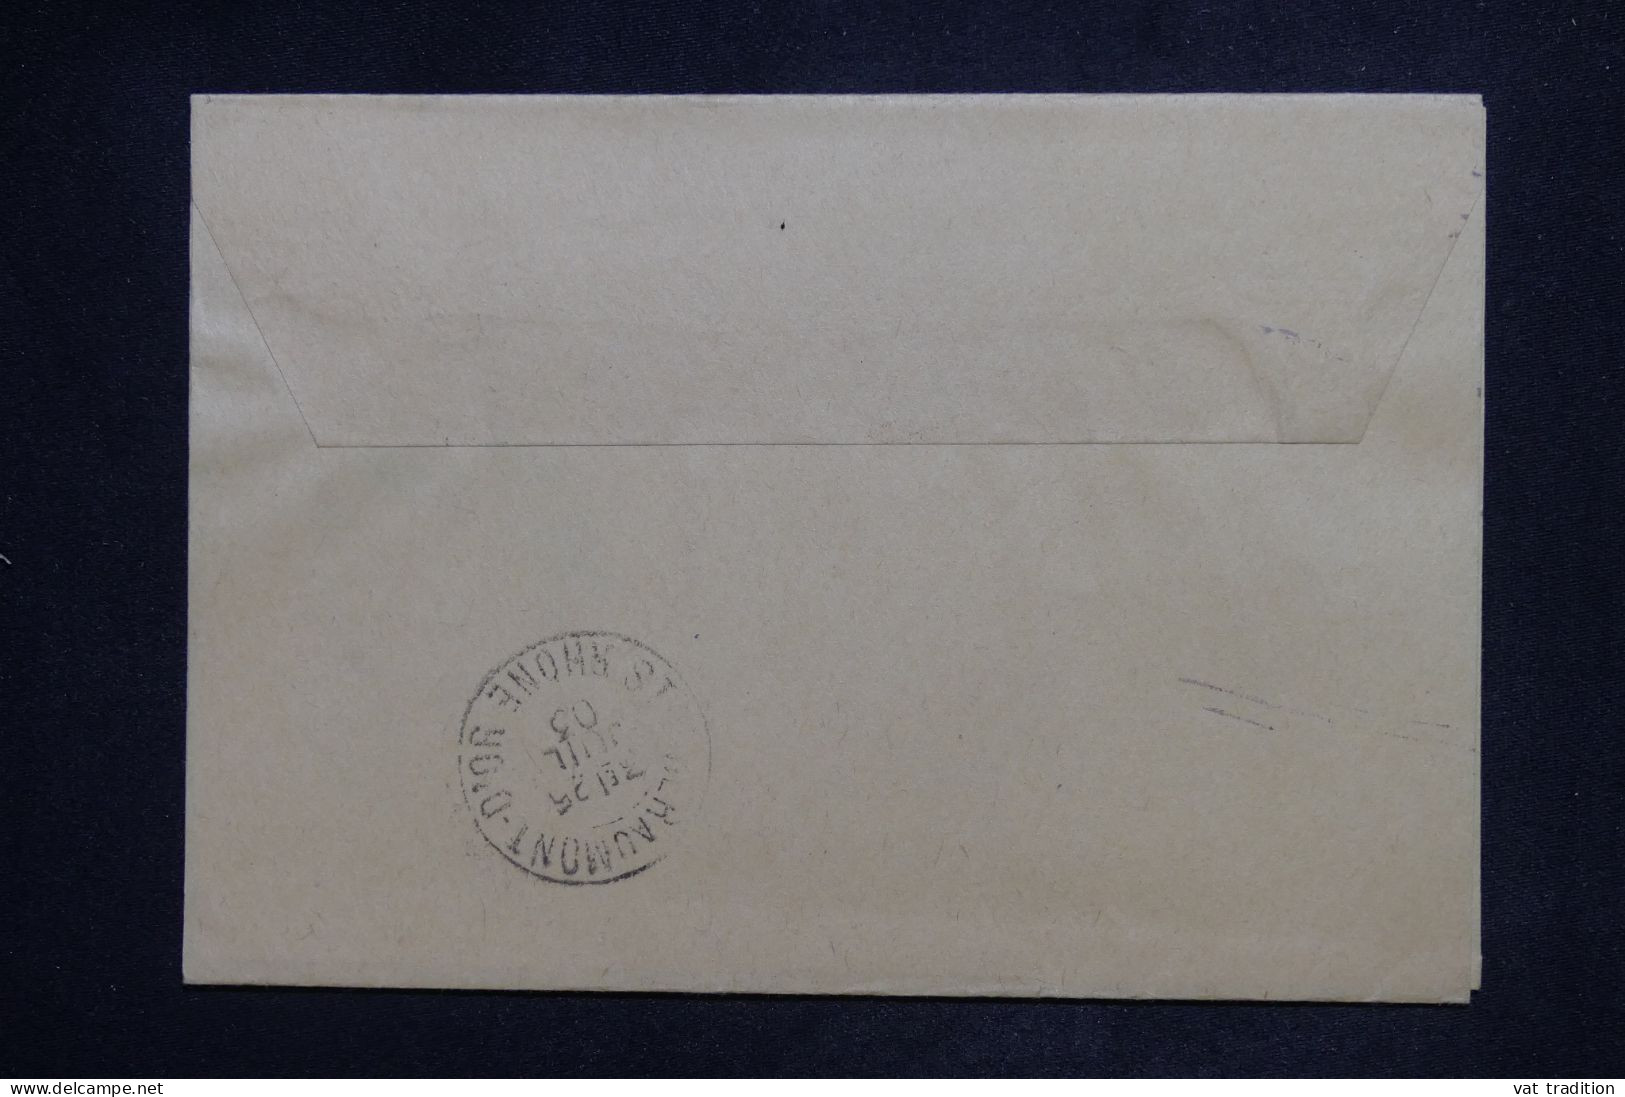 ROYAUME UNI - Entier Postal De Londres Pour La France En 1903 - L 151513 - Stamped Stationery, Airletters & Aerogrammes